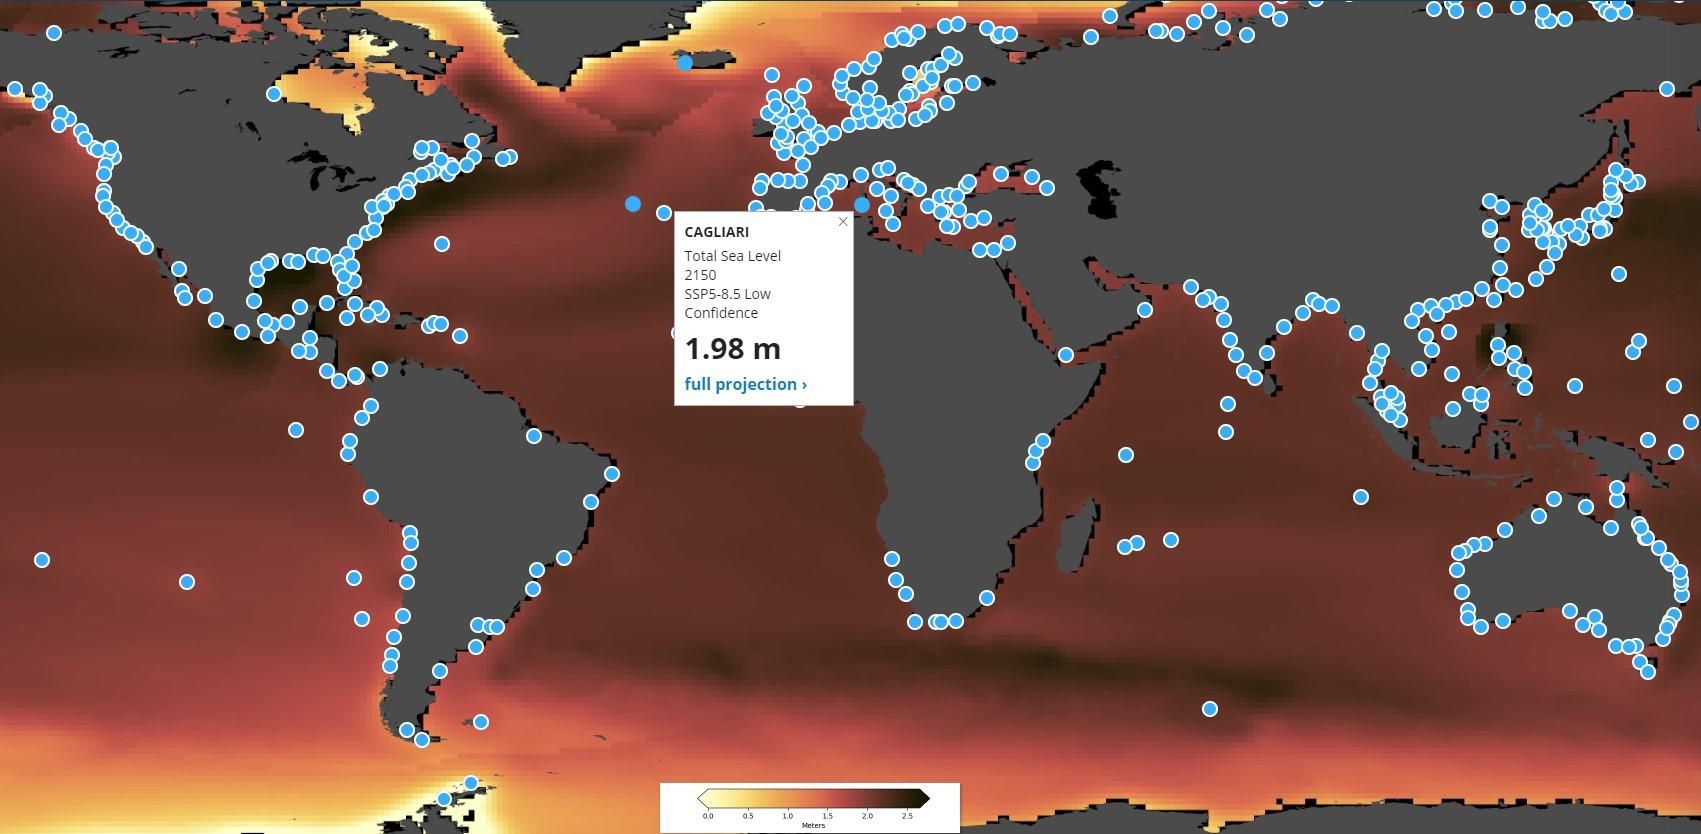 Уровень моря: сайт прогнозирует повышение уровня моря